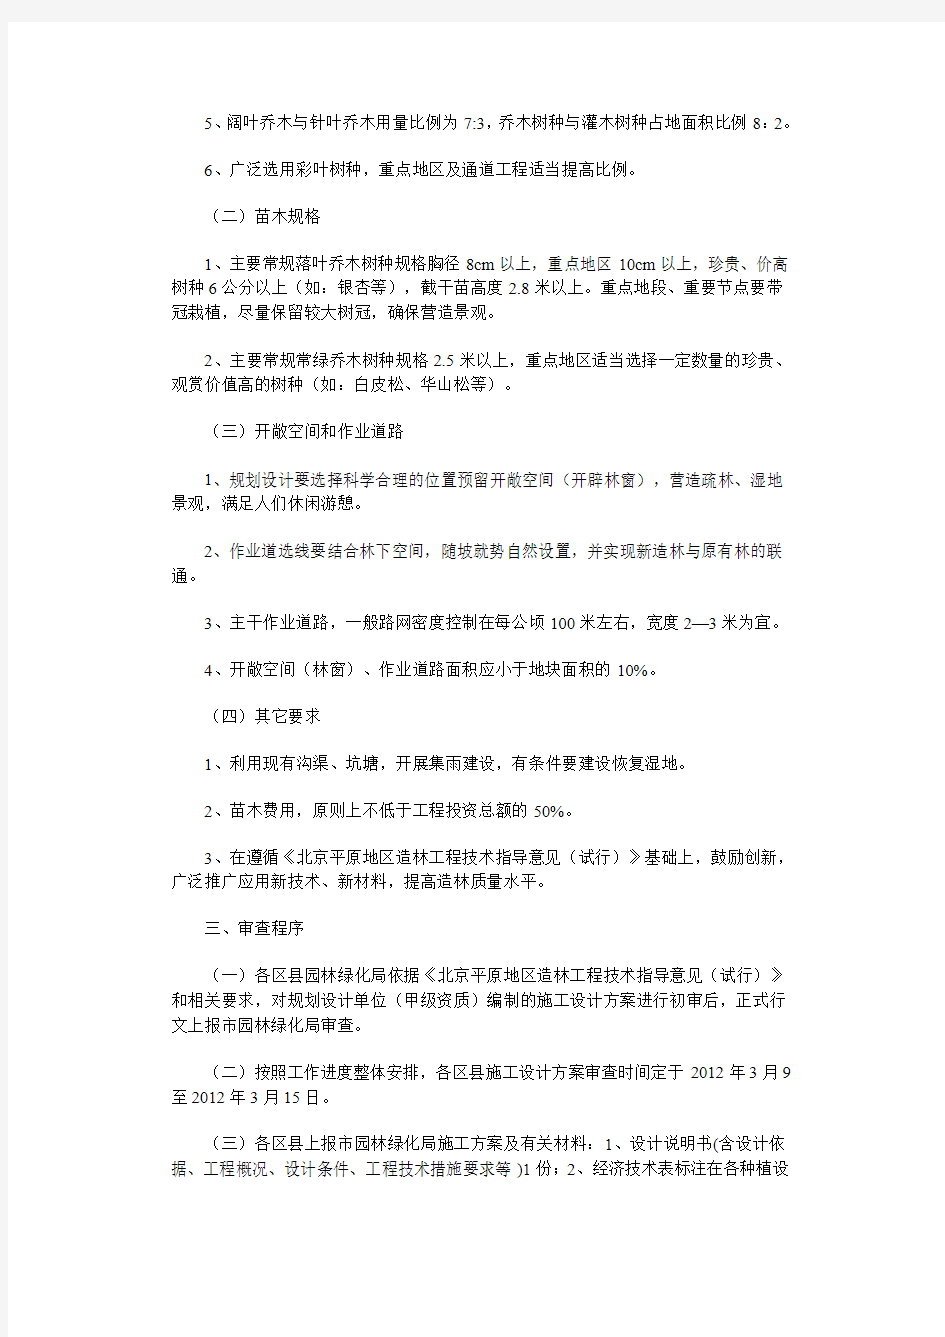 北京市园林绿化局关于做好2012年平原地区造林工程施工设计方案工作的通知 2012.3